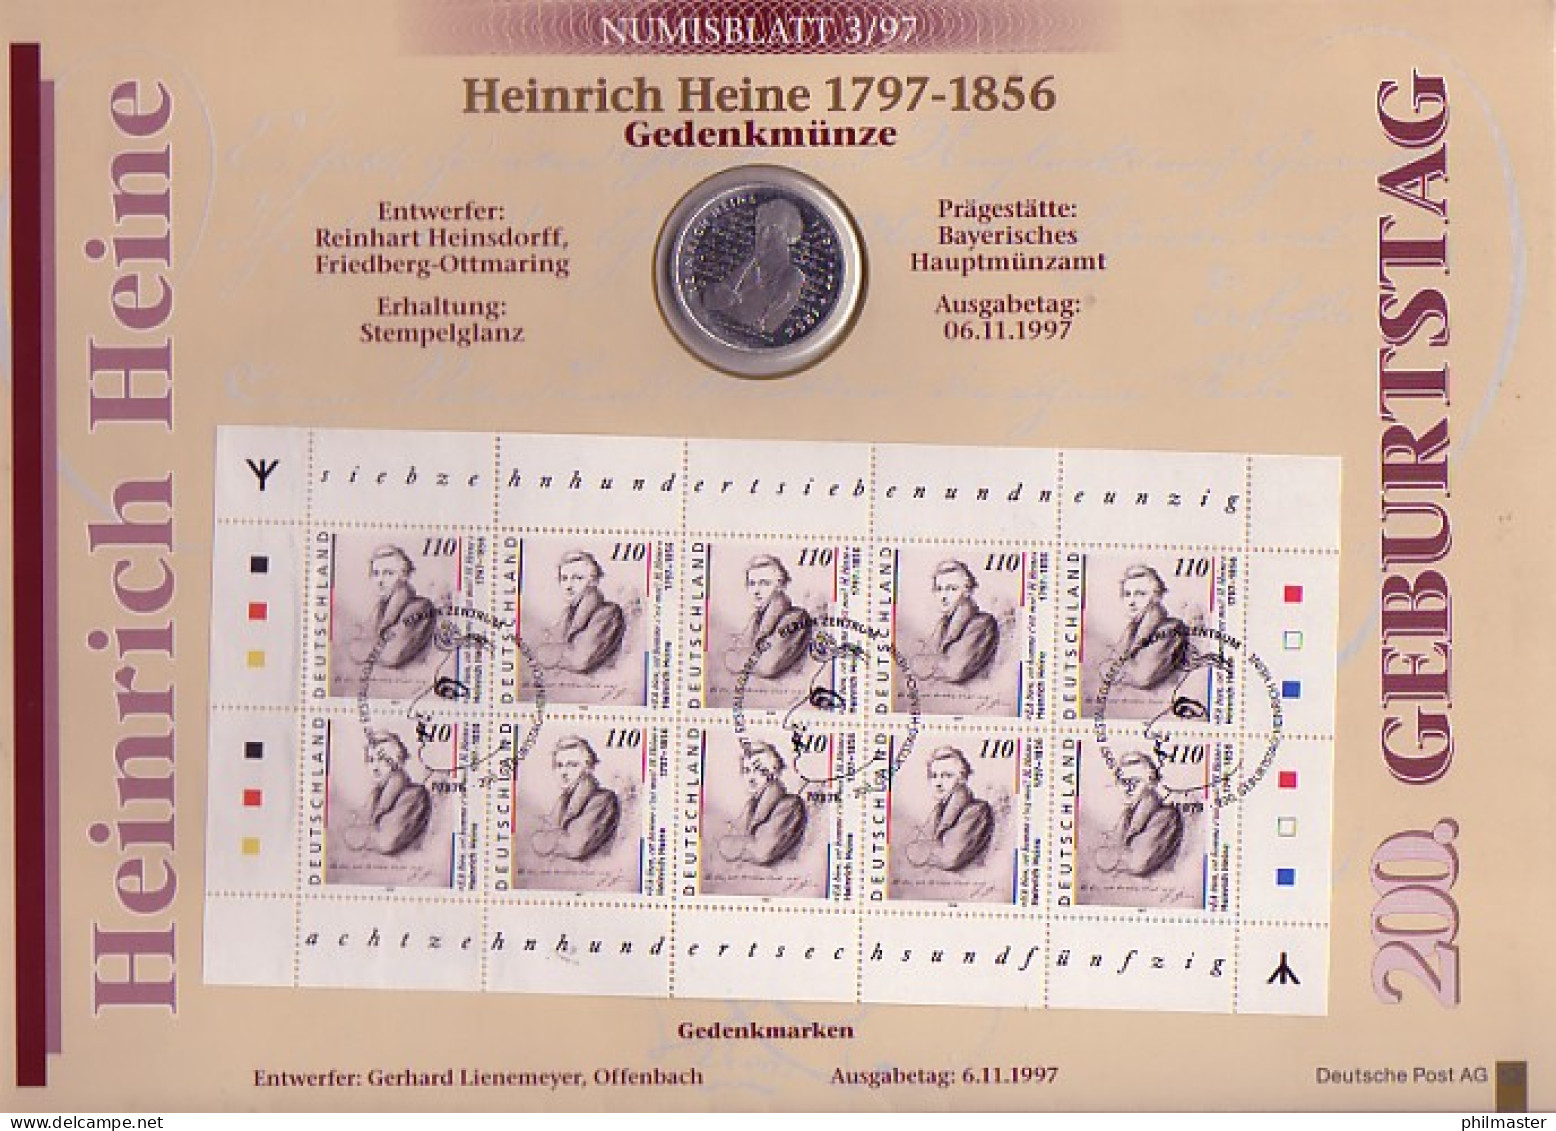 1962 Heine 1. Auflage Numisblatt 3/97 - Mit Runen, Echt Mit Stahlstempel ESSt - Numisbriefe